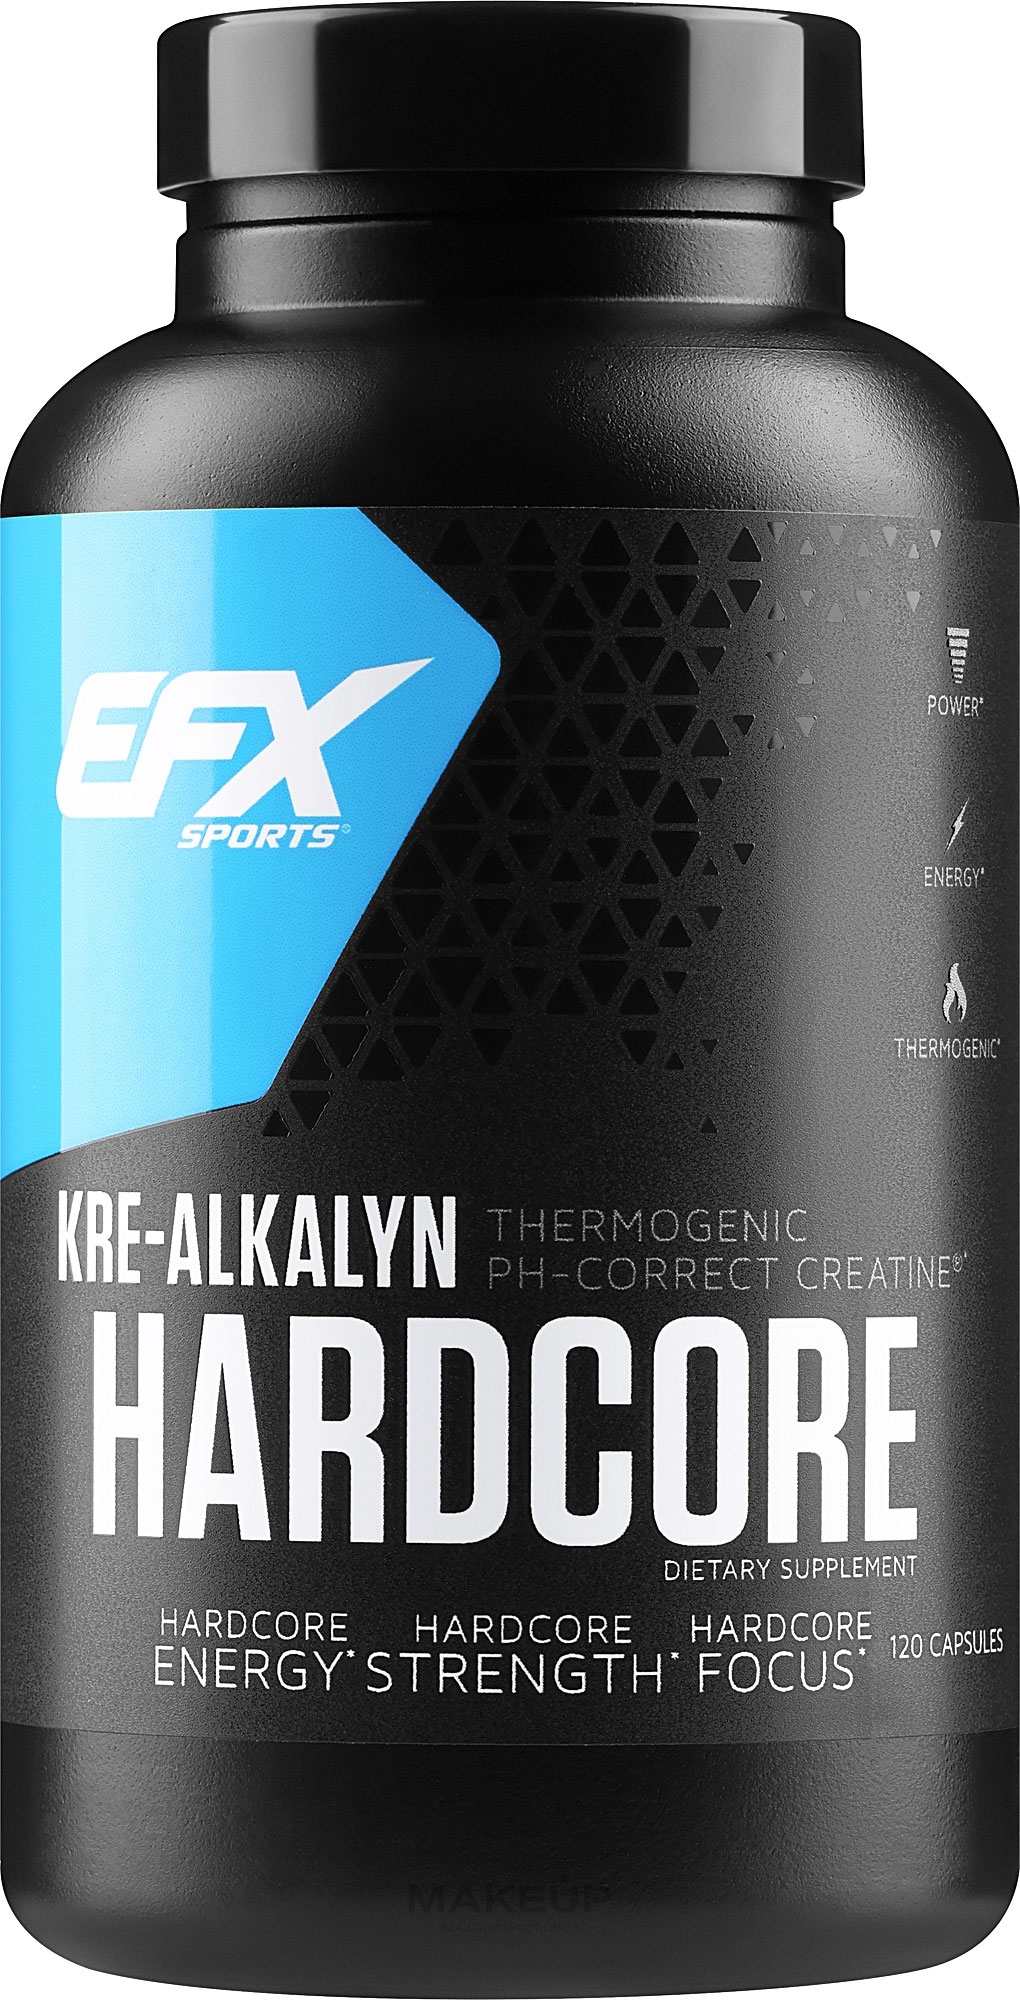 Cre-Alkalyn suplement w kapsułkach - EFX Sports Kre-Alkalyn Hardcore — Zdjęcie 120 szt.